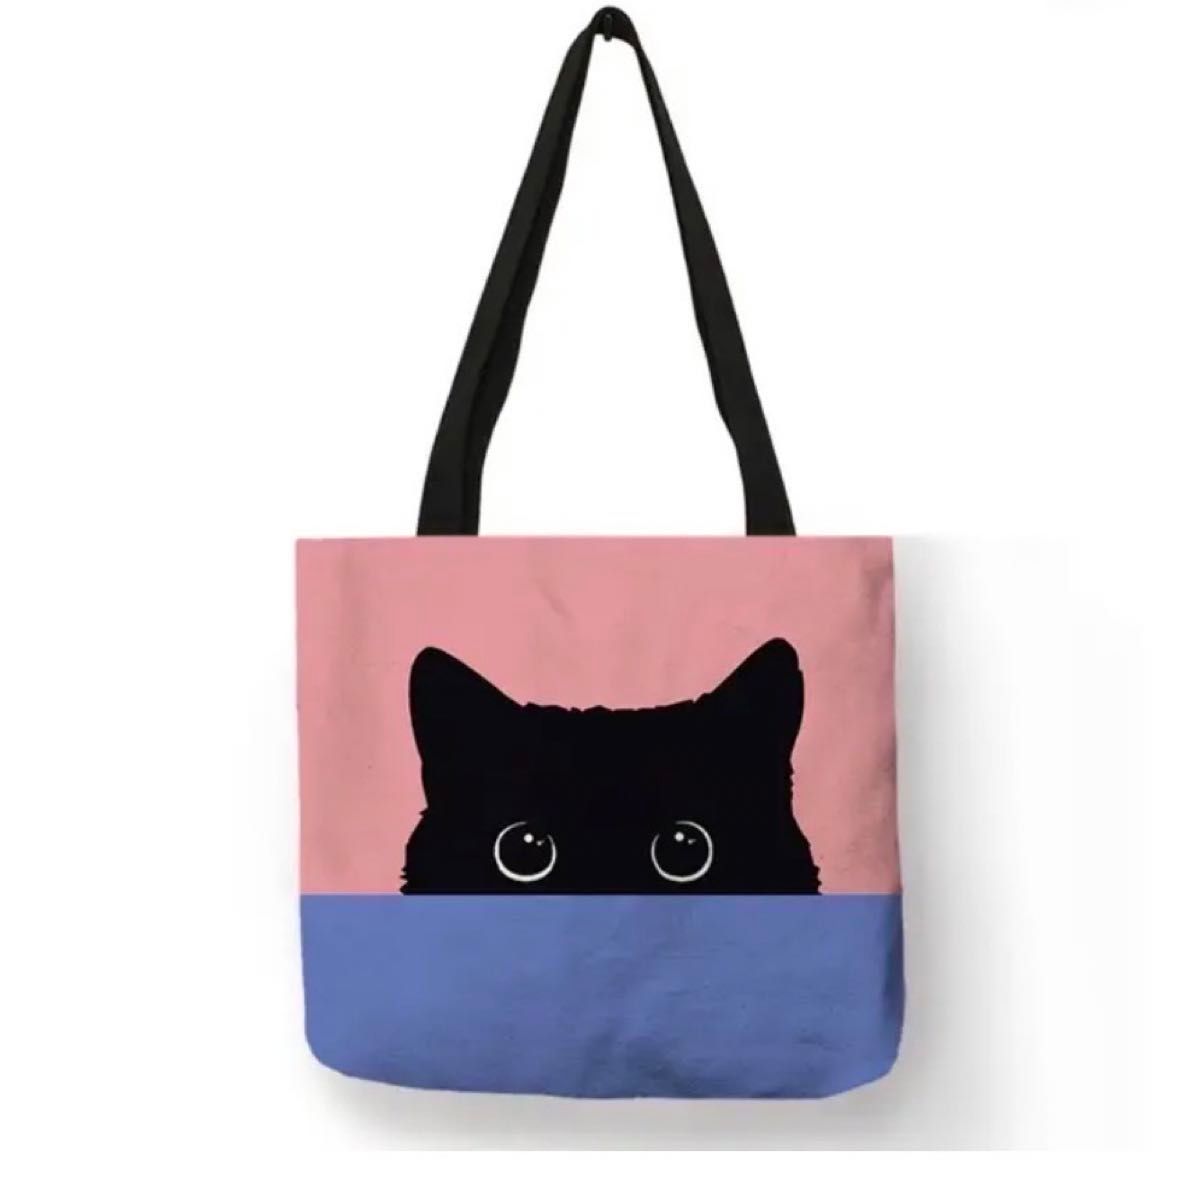 新品  黒猫 トートバッグ  エコバッグ  大容量  ピンク(薄)  Lサイズ